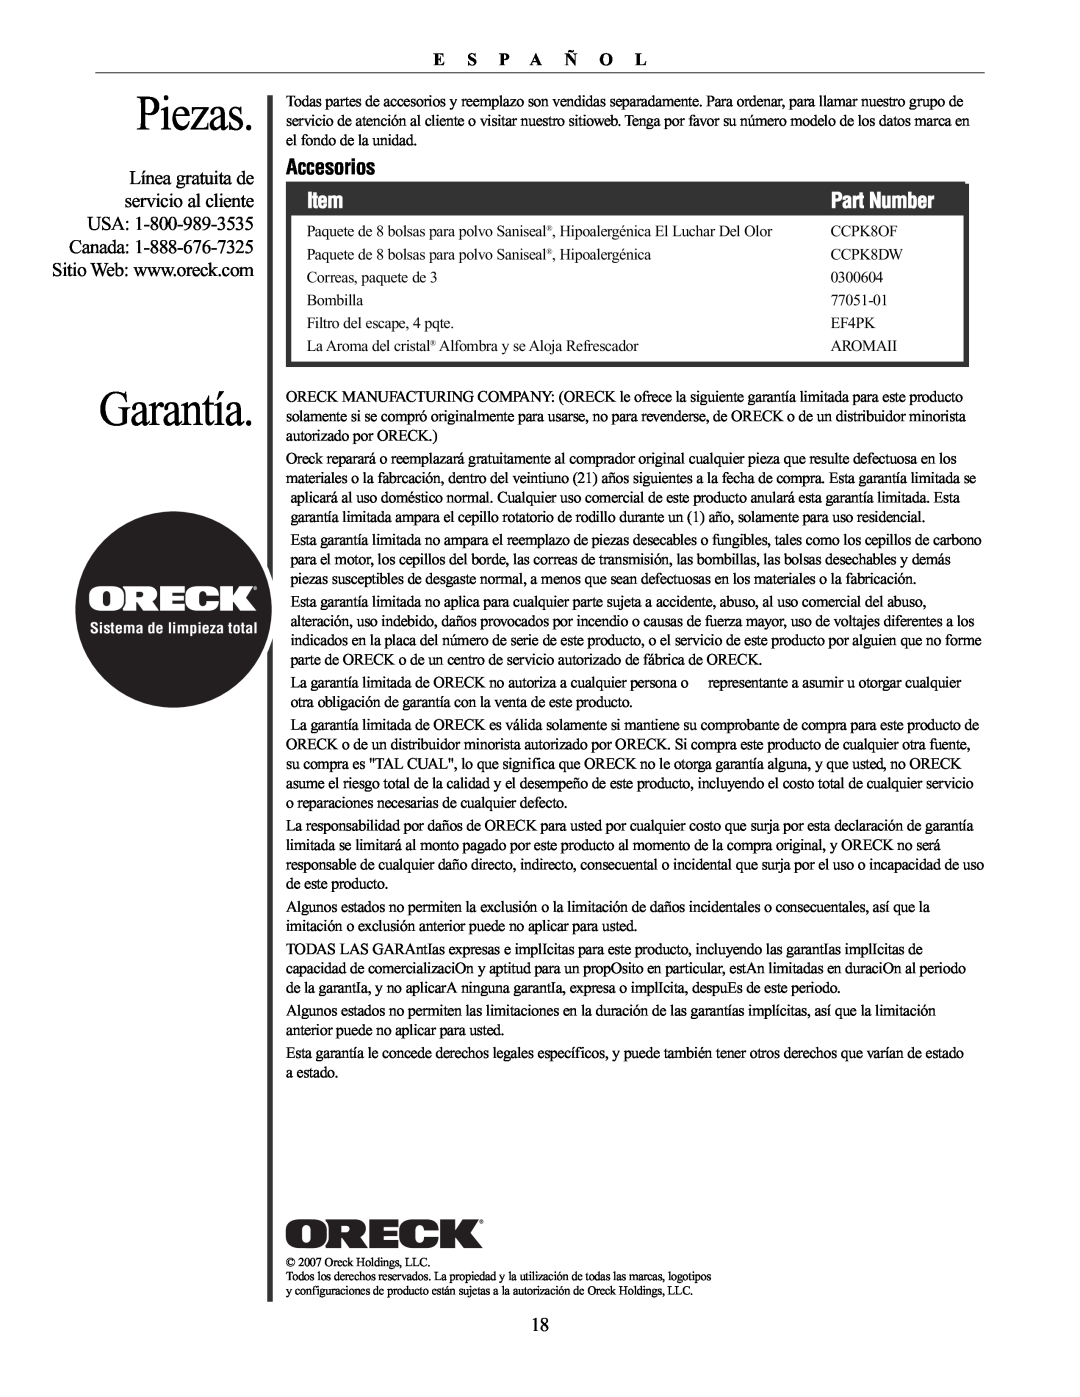 Oreck XL21 manual Piezas, Garantía, Accesorios, Part Number, Línea gratuita de servicio al cliente USA, E S P A Ñ O L 